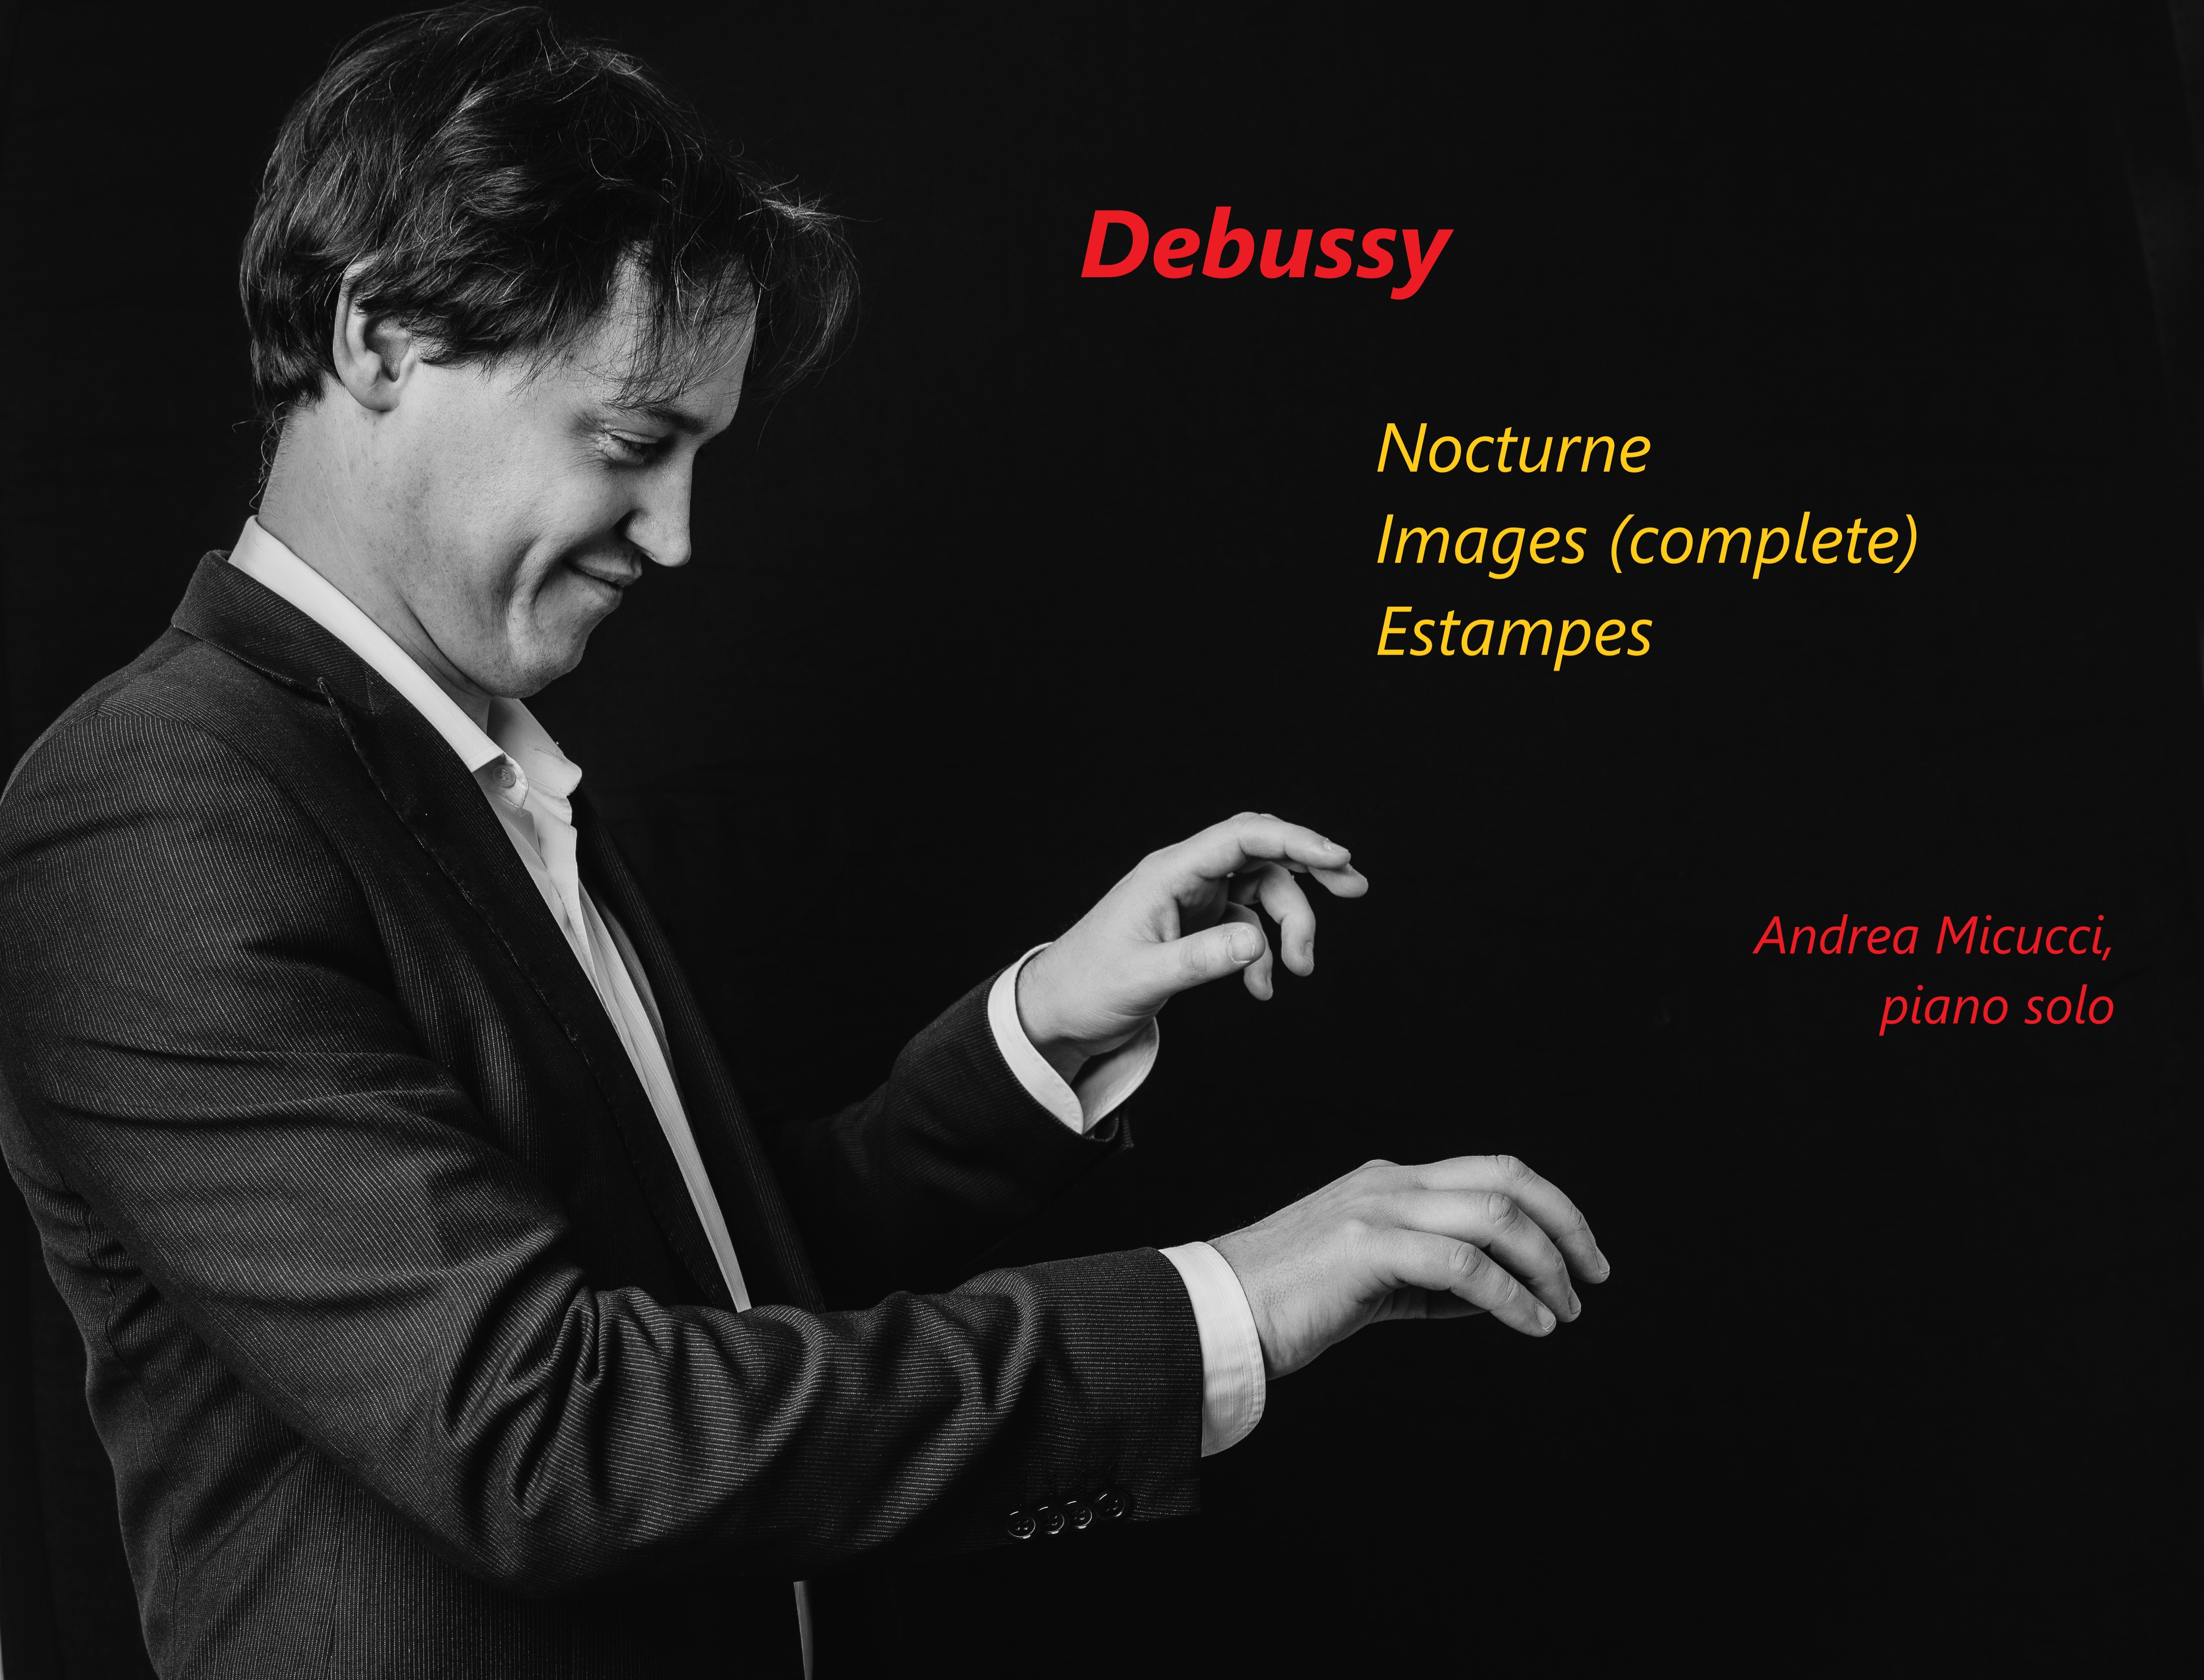 Debussy, la musica dell'inesprimibile
Produzione discografica e tournée
Andrea Micucci, piano solo